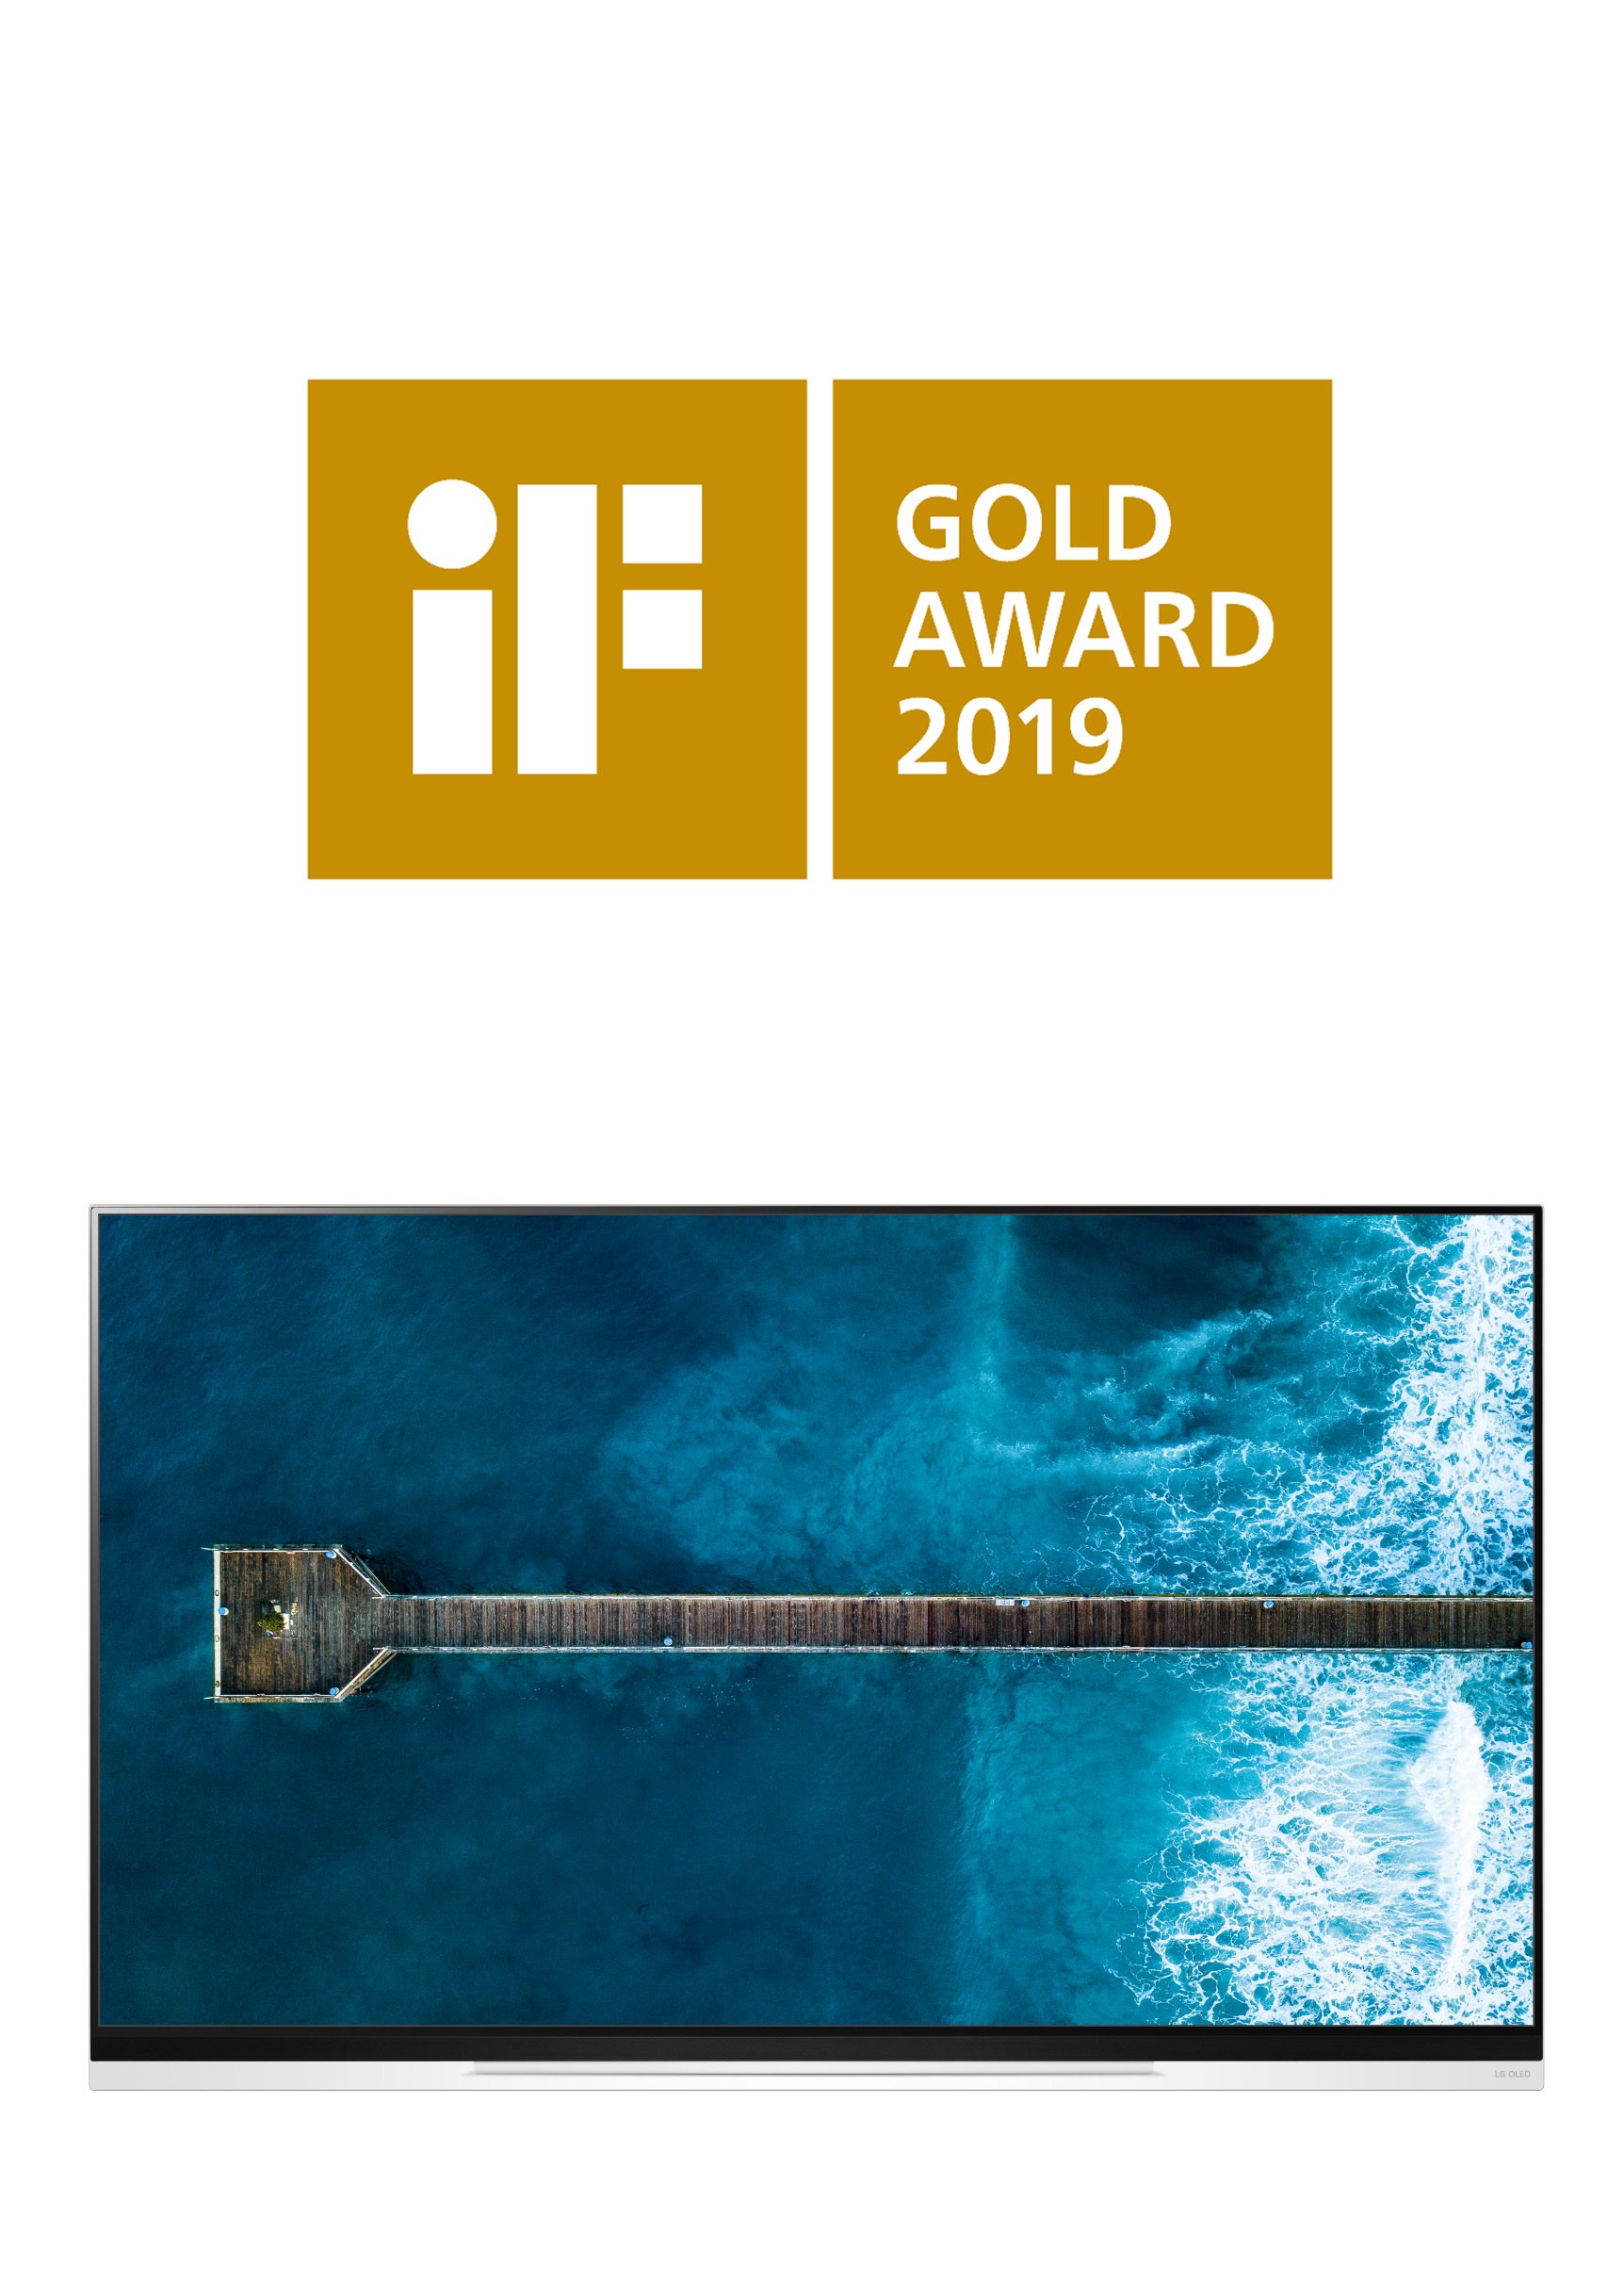 Logo of iF Gold Award and the LG OLED TV E9 image.